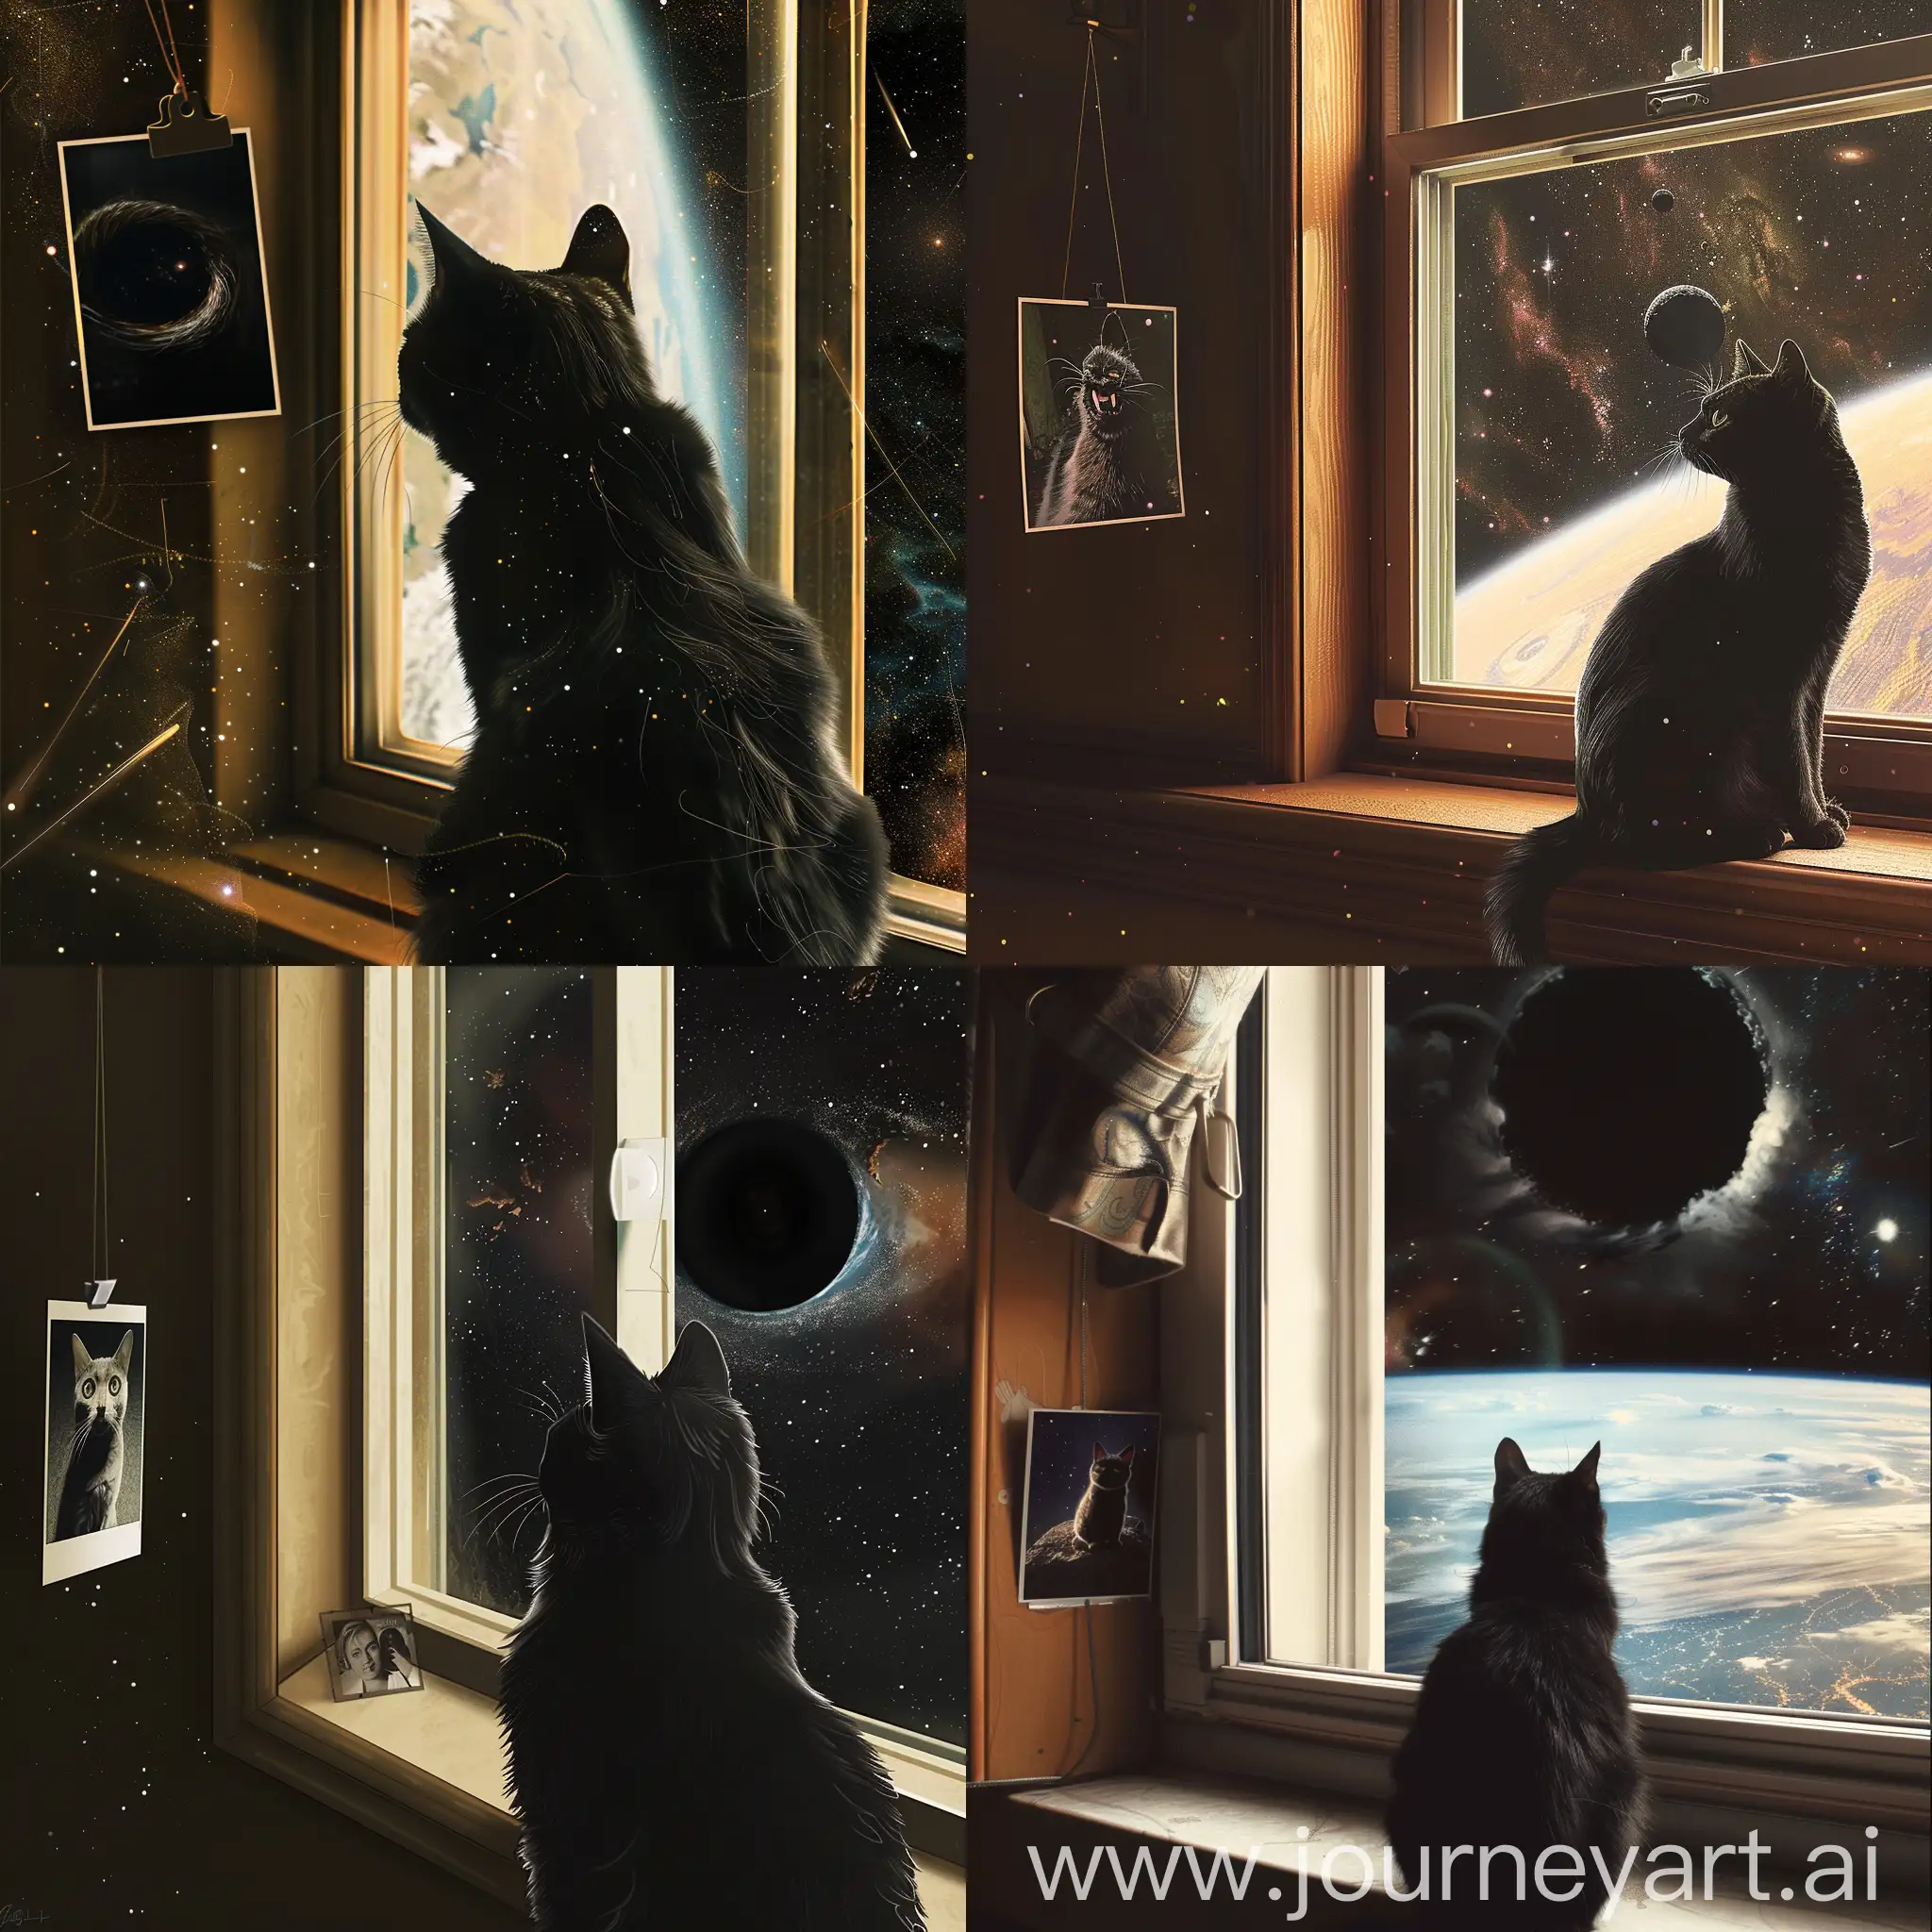 черный кот, смотрит в окно, в космосе, за окном черная дыра, у окна висит фотография кошки